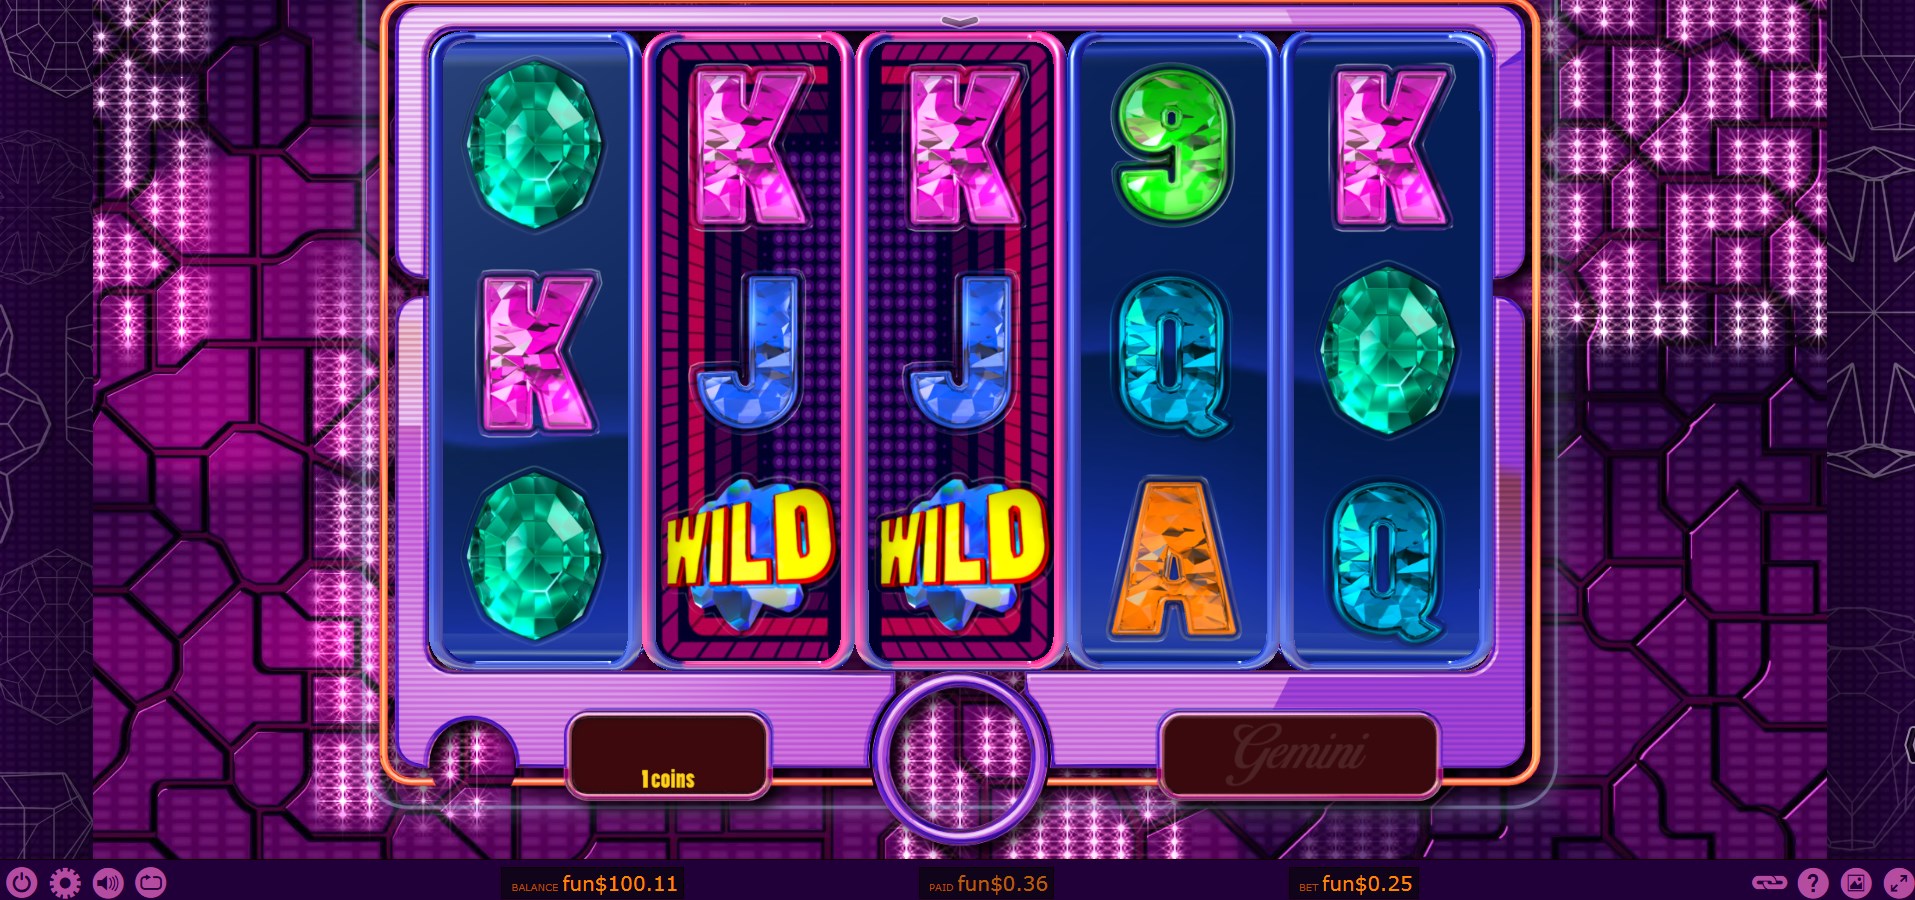 3 Dice Casino Slot Games